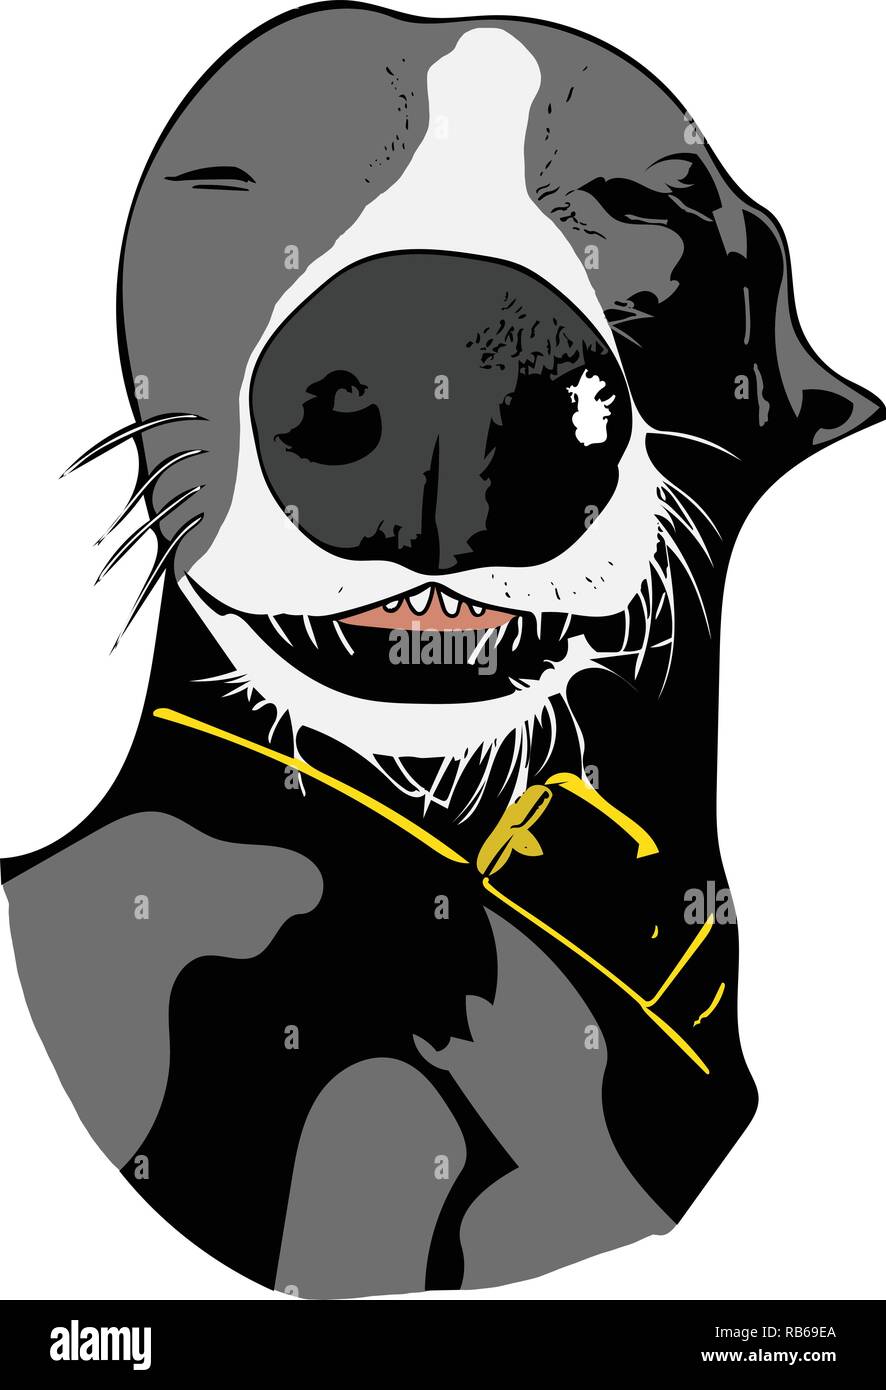 Farbe vektorgrafik von schlafenden graue und weiße Whippet Hund mit markanter Nase. Stock Vektor